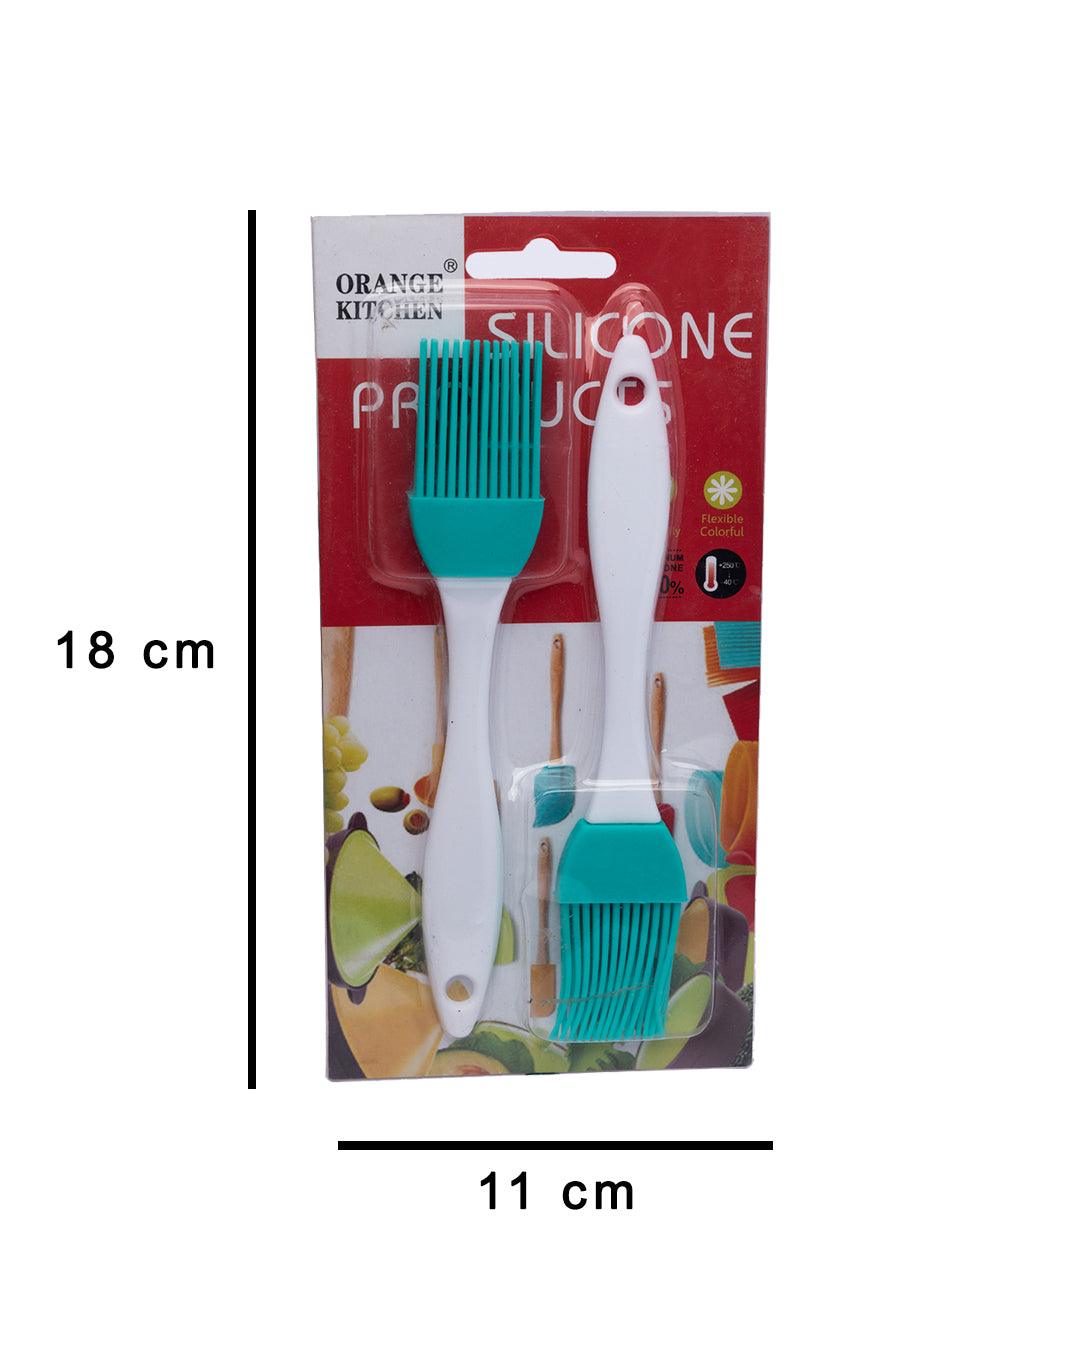 Oil Brush, Basting Brush, Pastry Brush for Cooking, Blue, Plastic, Set of 2 - MARKET 99